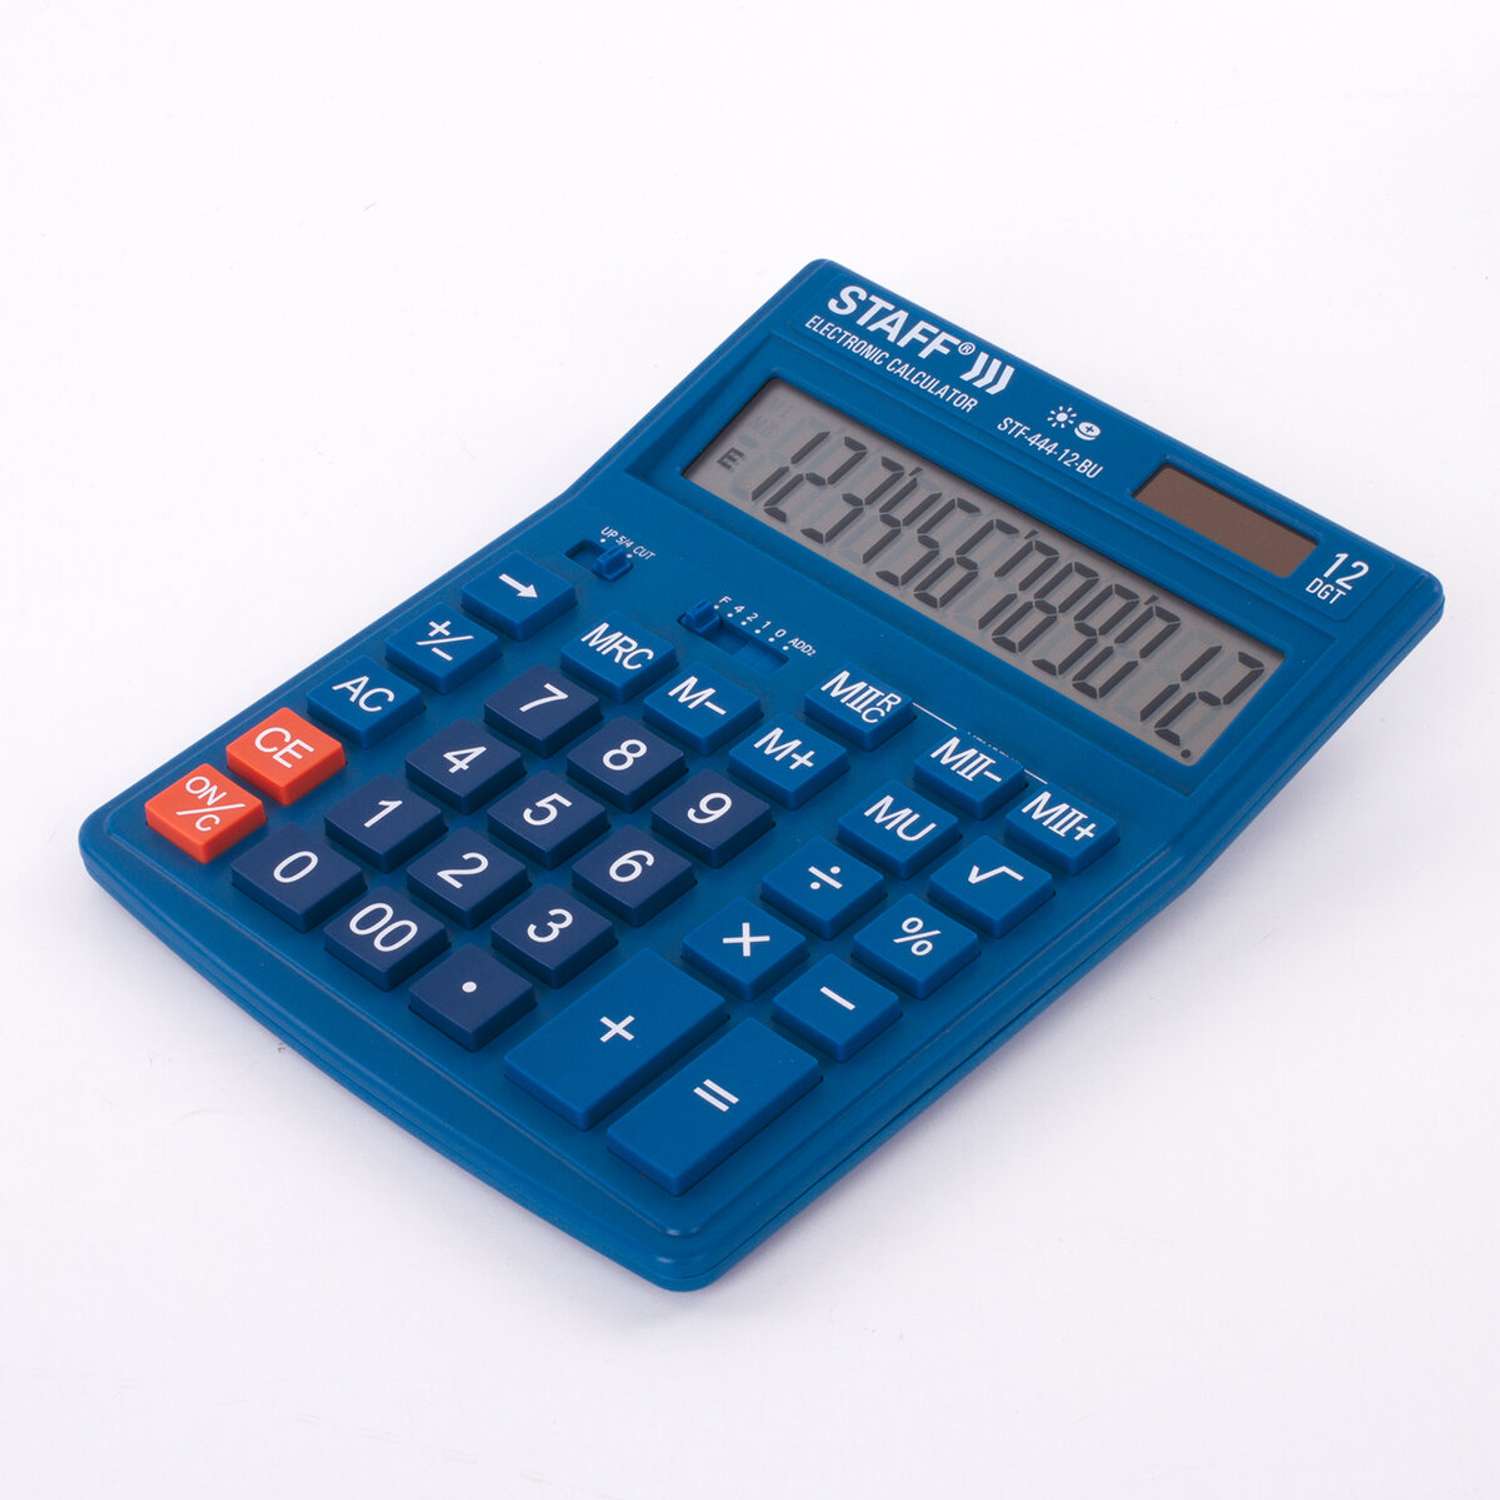 Калькулятор настольный Staff электронный 12 разрядов - фото 4